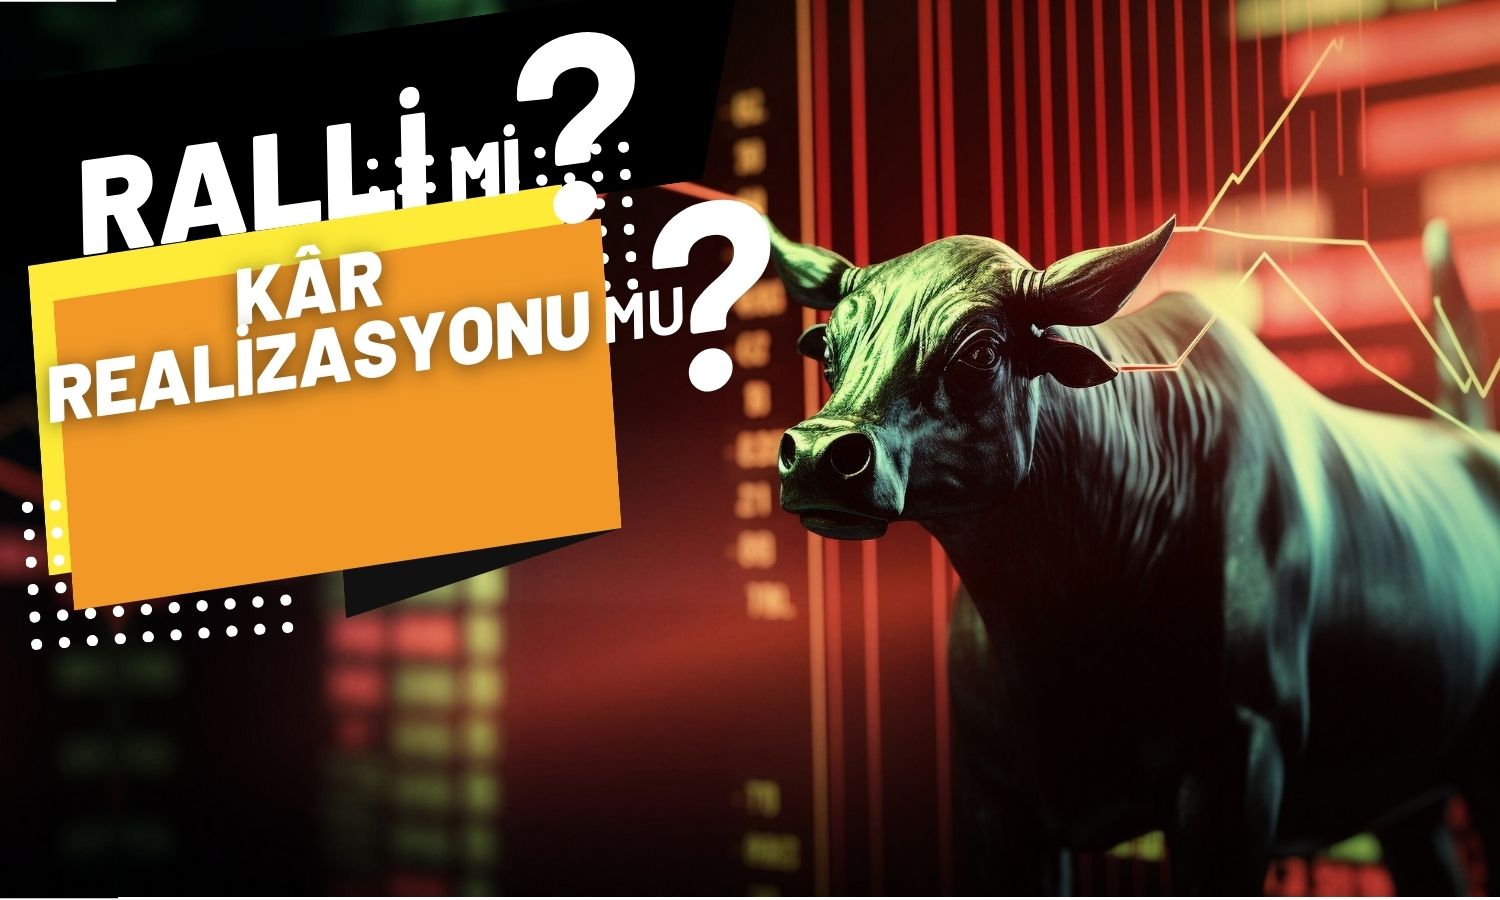 S&P Sonrası Borsa İstanbul’dan İlk Reaksiyon Geldi